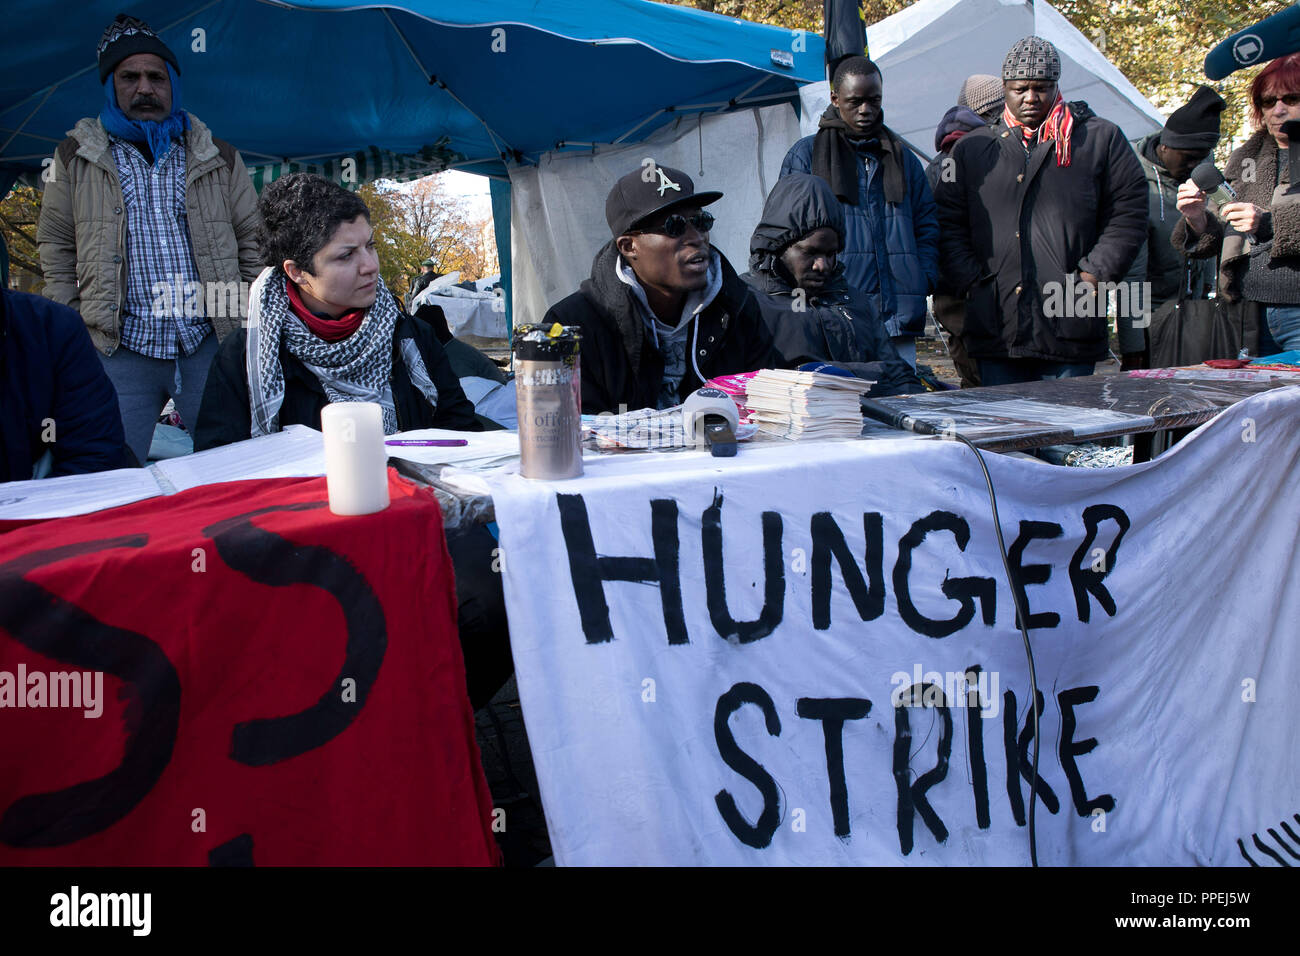 Les réfugiés de démontrer l'égalité et un "droit de rester pour tous" avec un camp de protestation et une grève de la faim sur la Sendlinger-Tor-Platz. La photo montre une conférence de presse avec un supporter. Banque D'Images